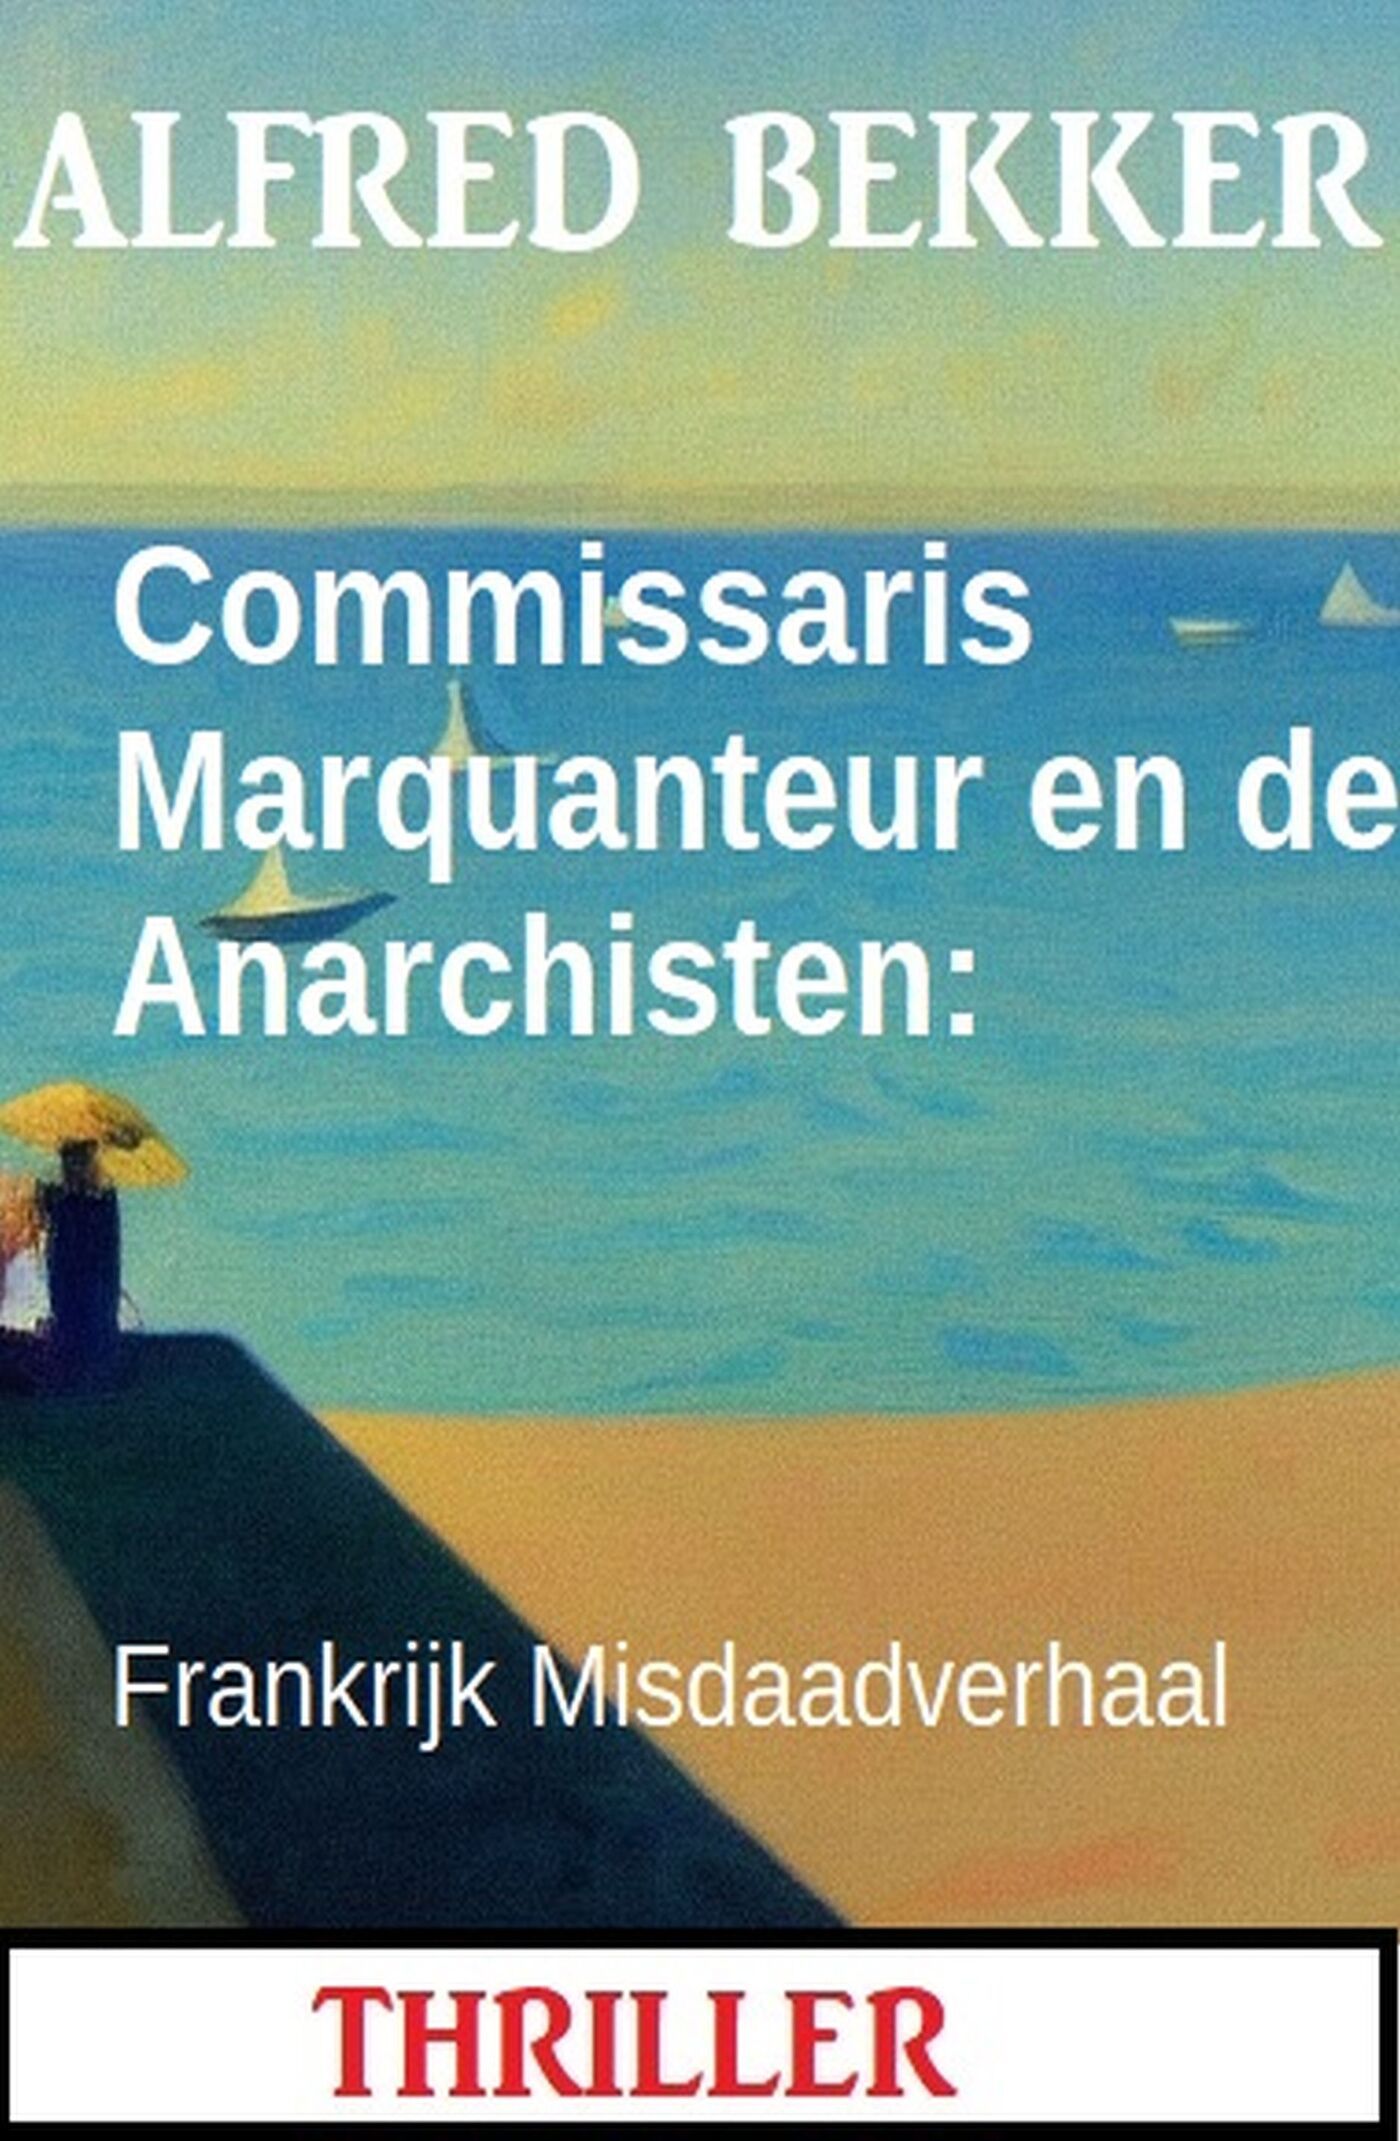 Bekker, Alfred - Commissaris Marquanteur en de anarchisten